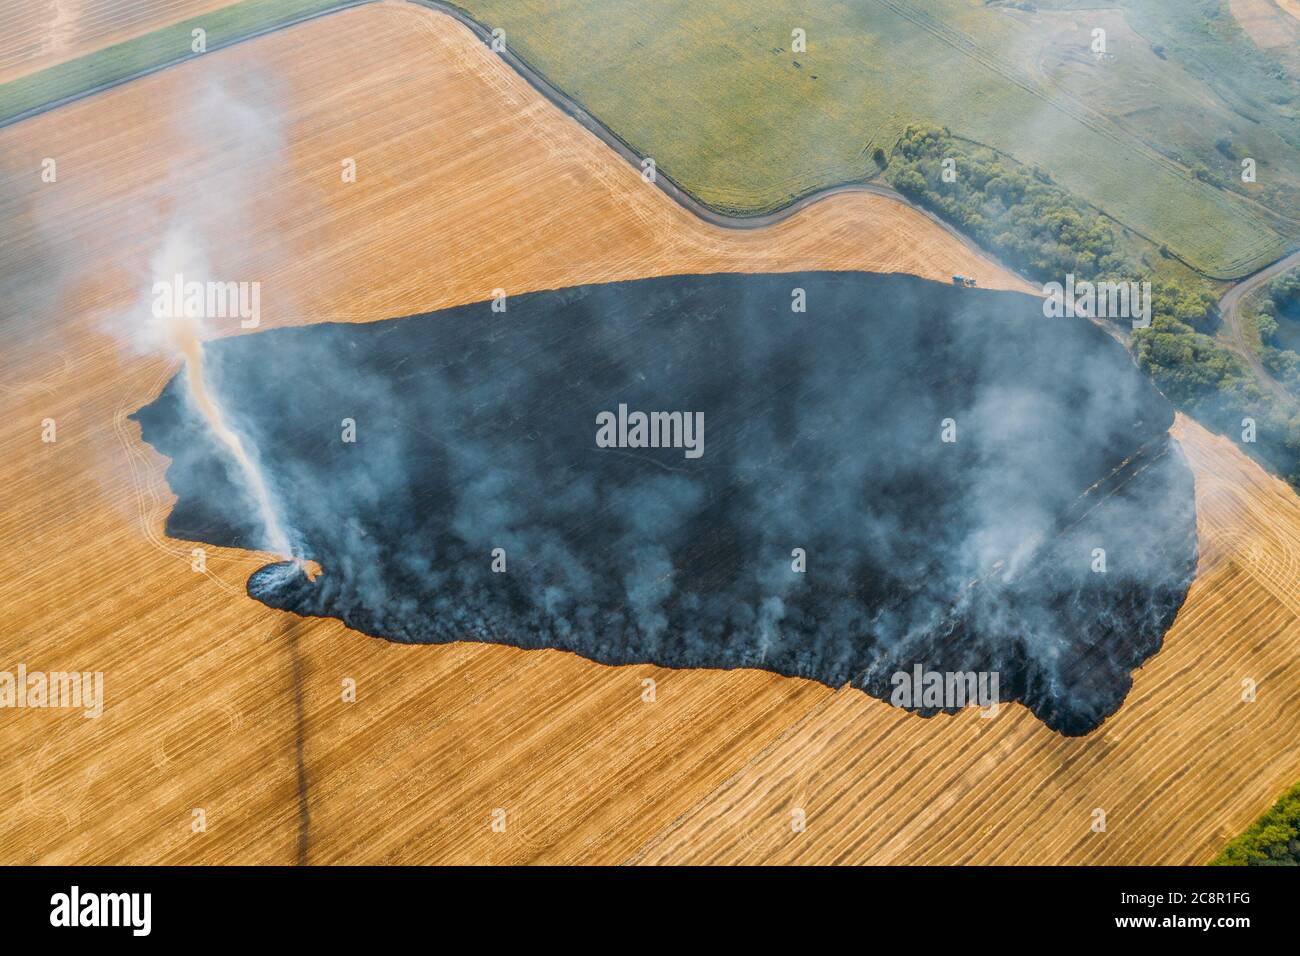 Campo agricolo in fuoco, vista aerea. Campo di segale agricolo in fiamme, piccolo tornado formatosi nel fumo. Foto Stock